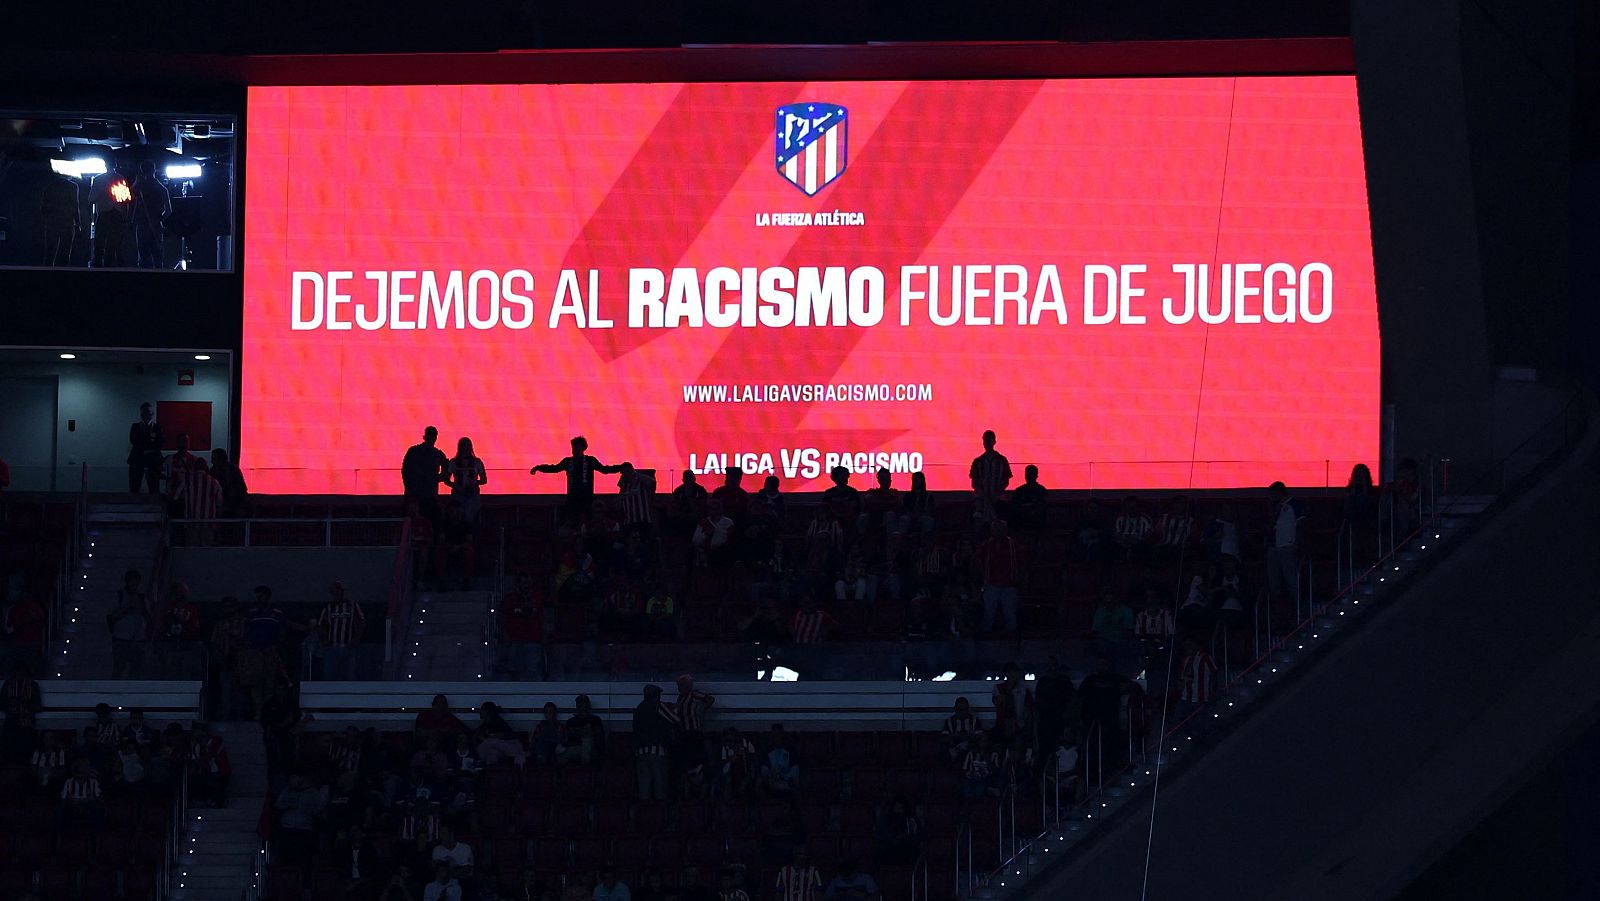 Atlético de Madrid - Real Madrid: Mensaje contra el racismo en el marcador electrónico.